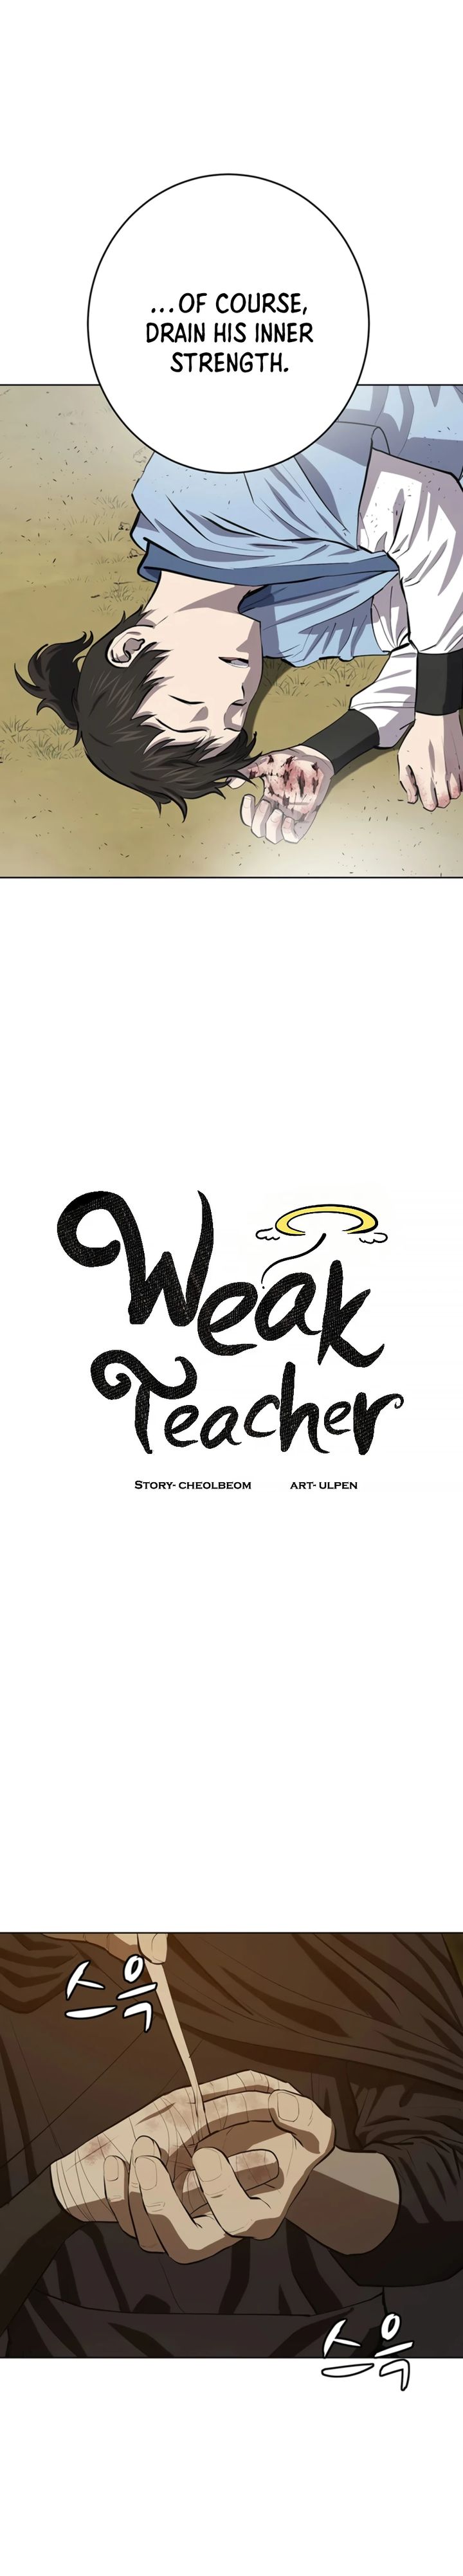 weak_teacher_77_10